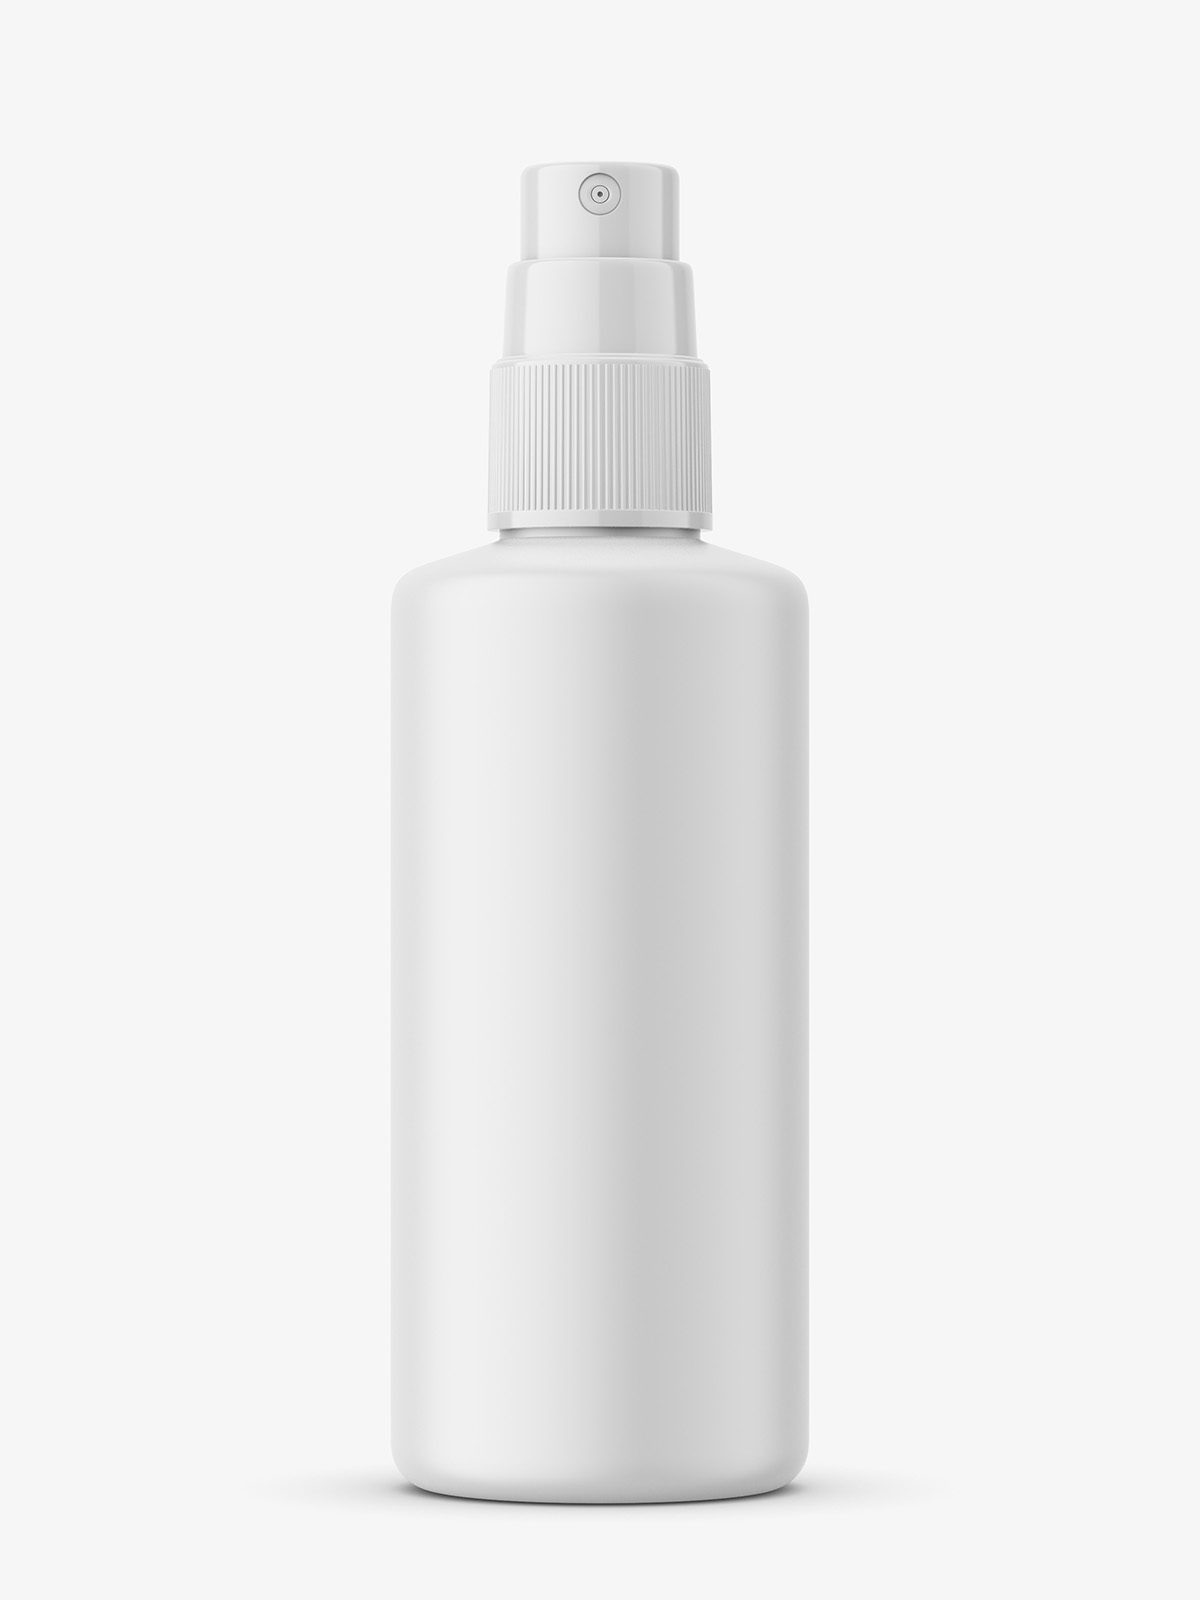 Transparent mist spray bottle mockup